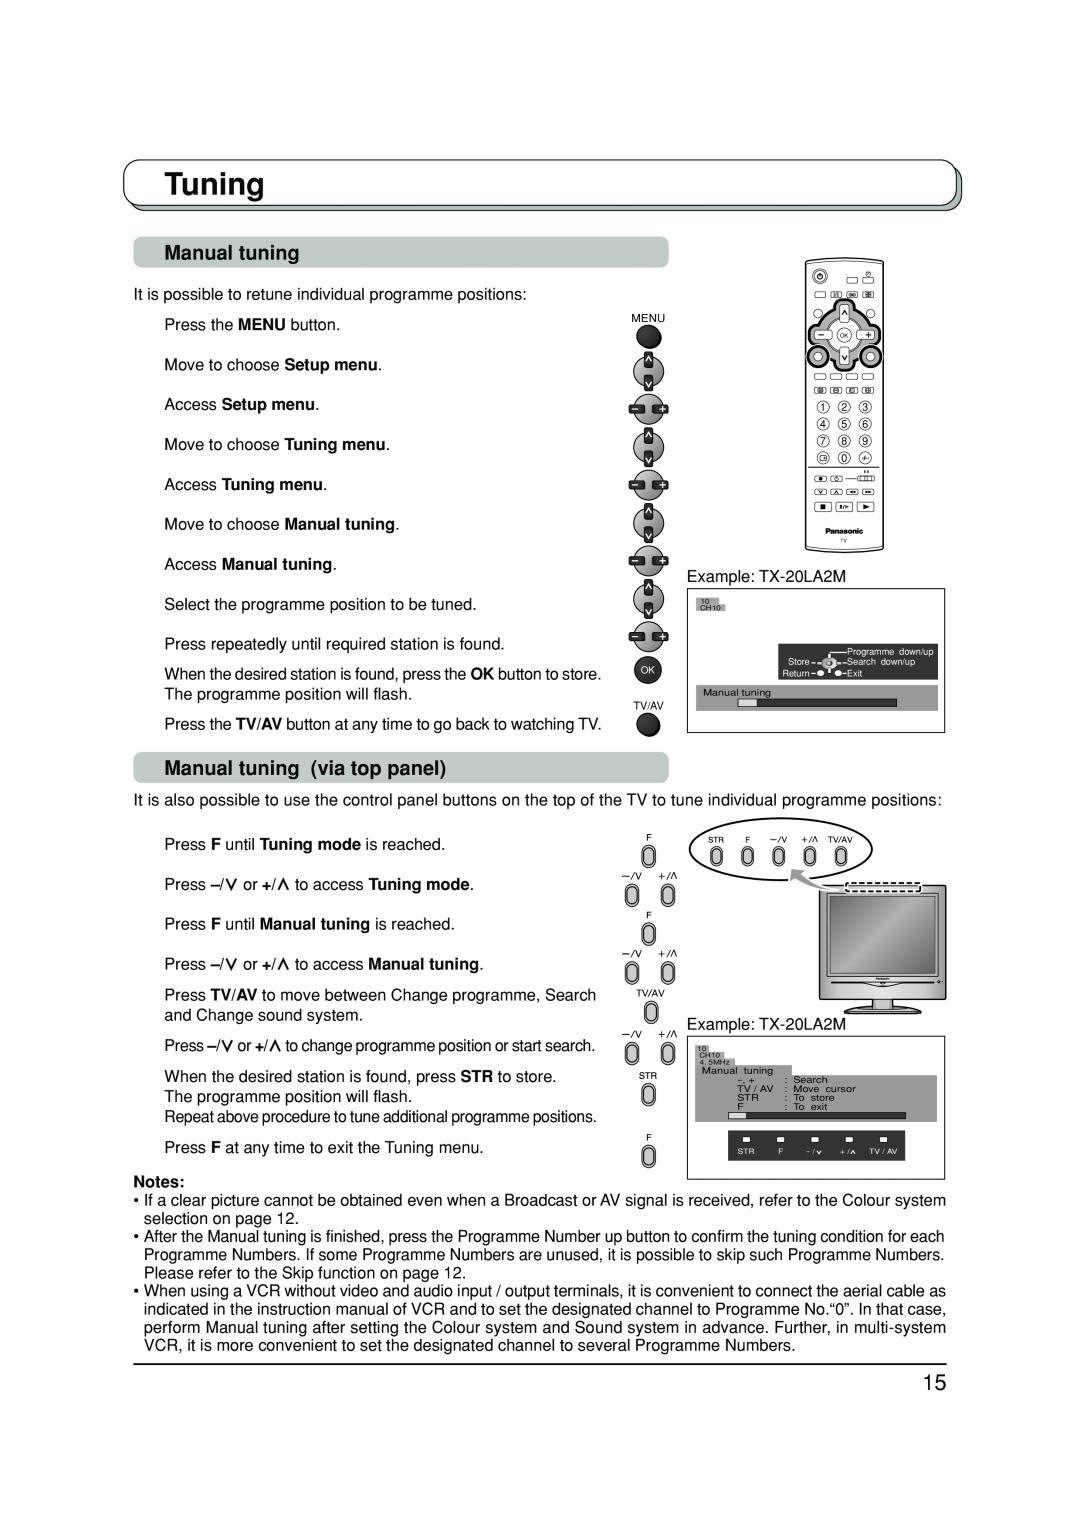 Panasonic TX-20LA2A manual Manual tuning via top panel, Access Setup menu, Access Tuning menu, Access Manual tuning 